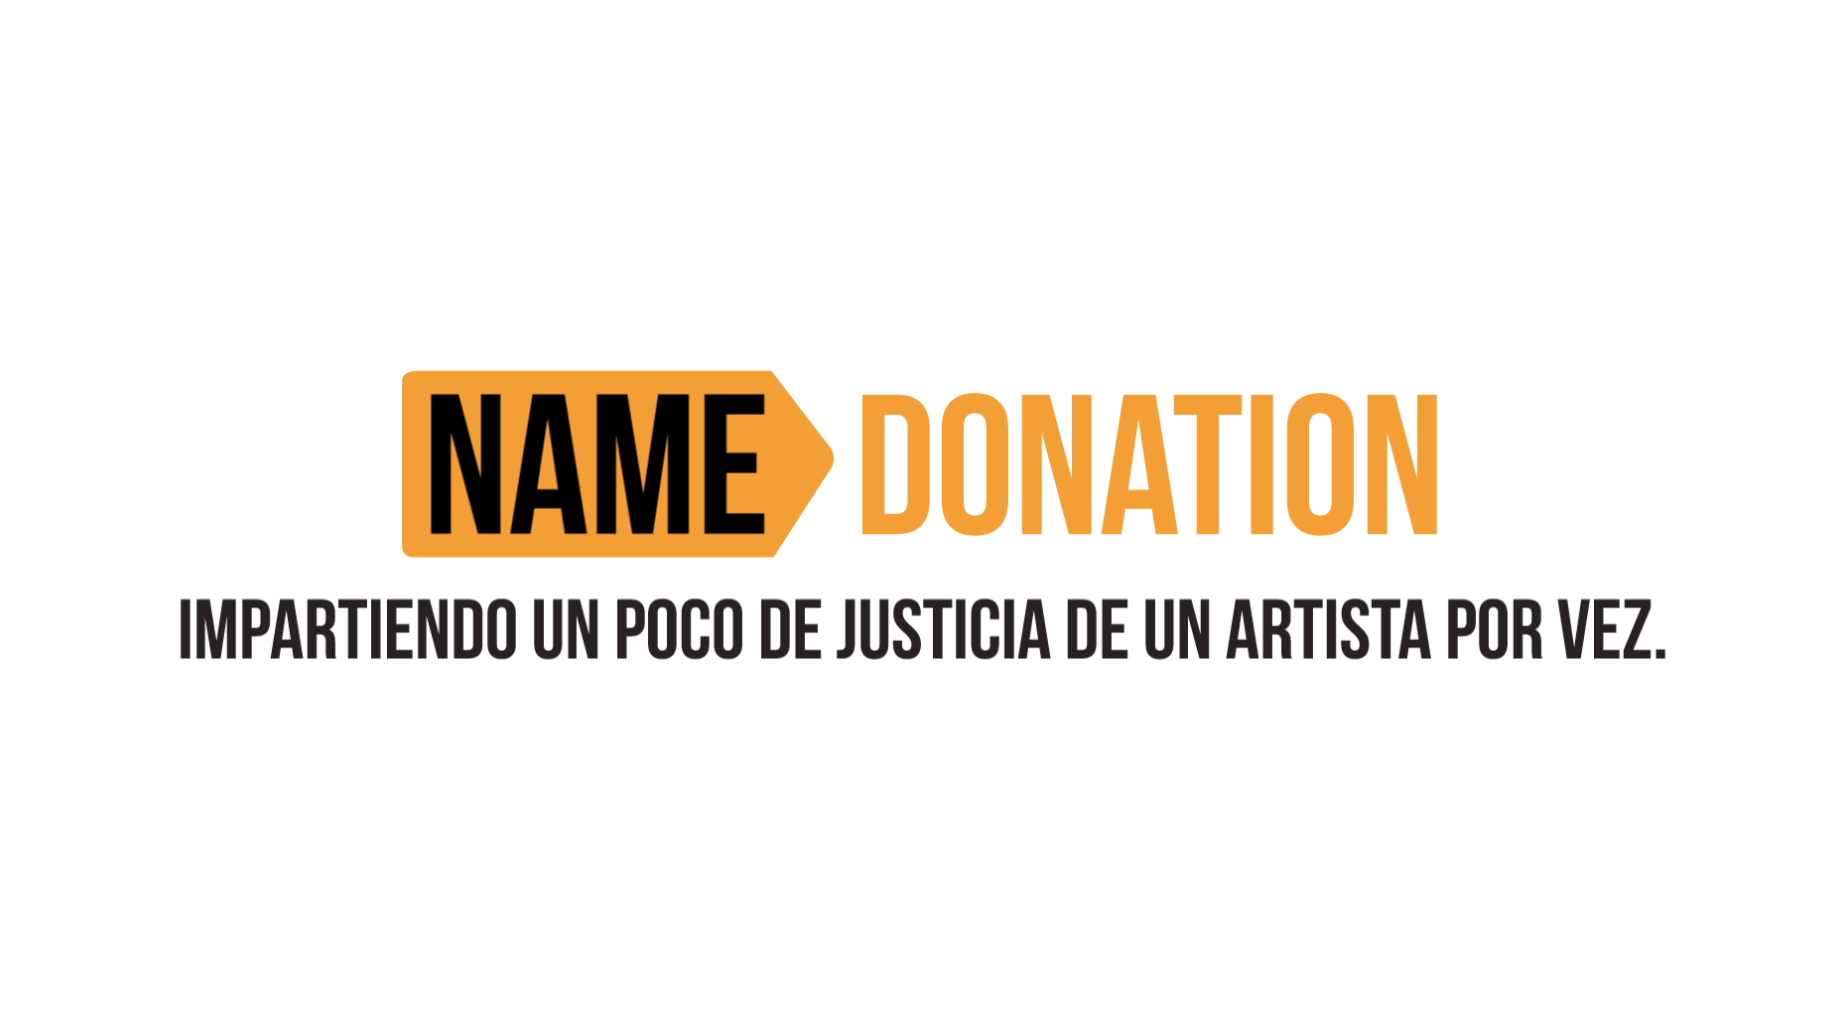 “Name Donation”, lo nuevo de +Castro junto a URRA 